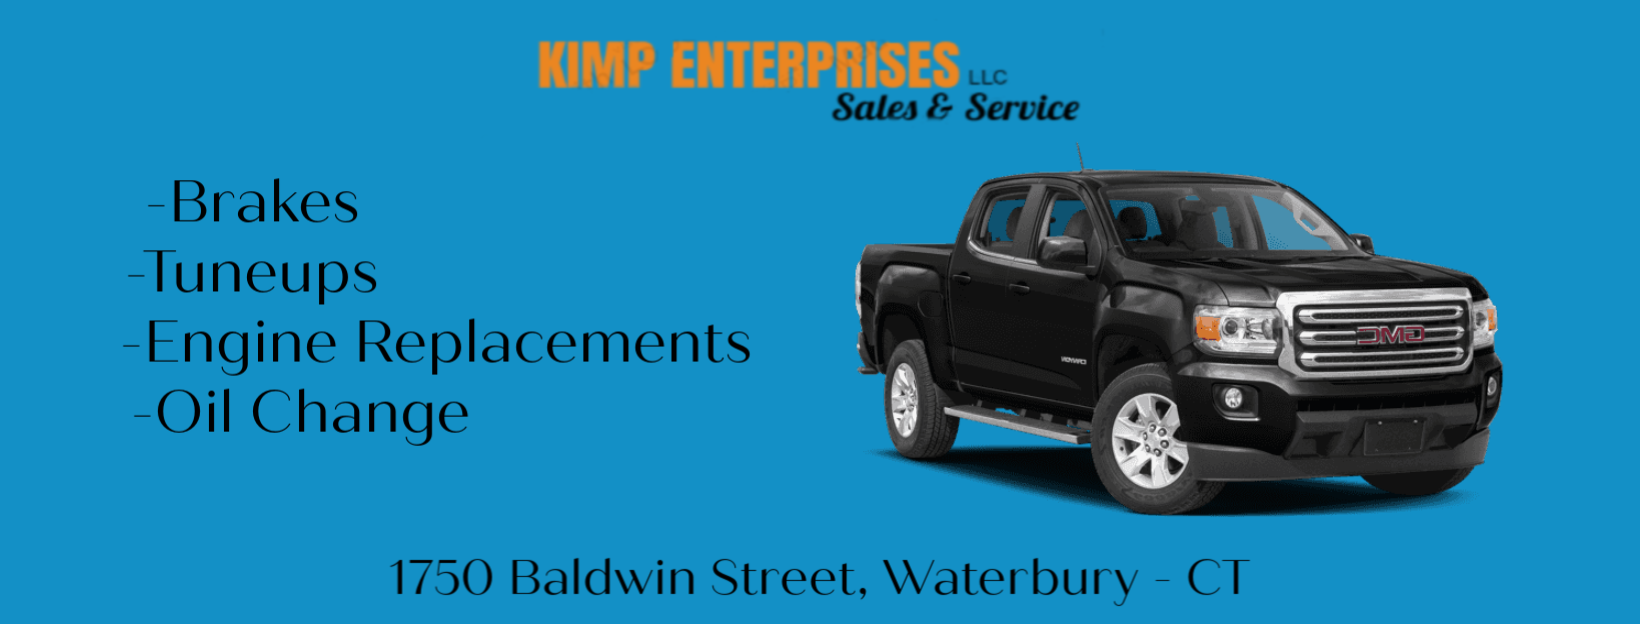 Kimp Enterprises LLC